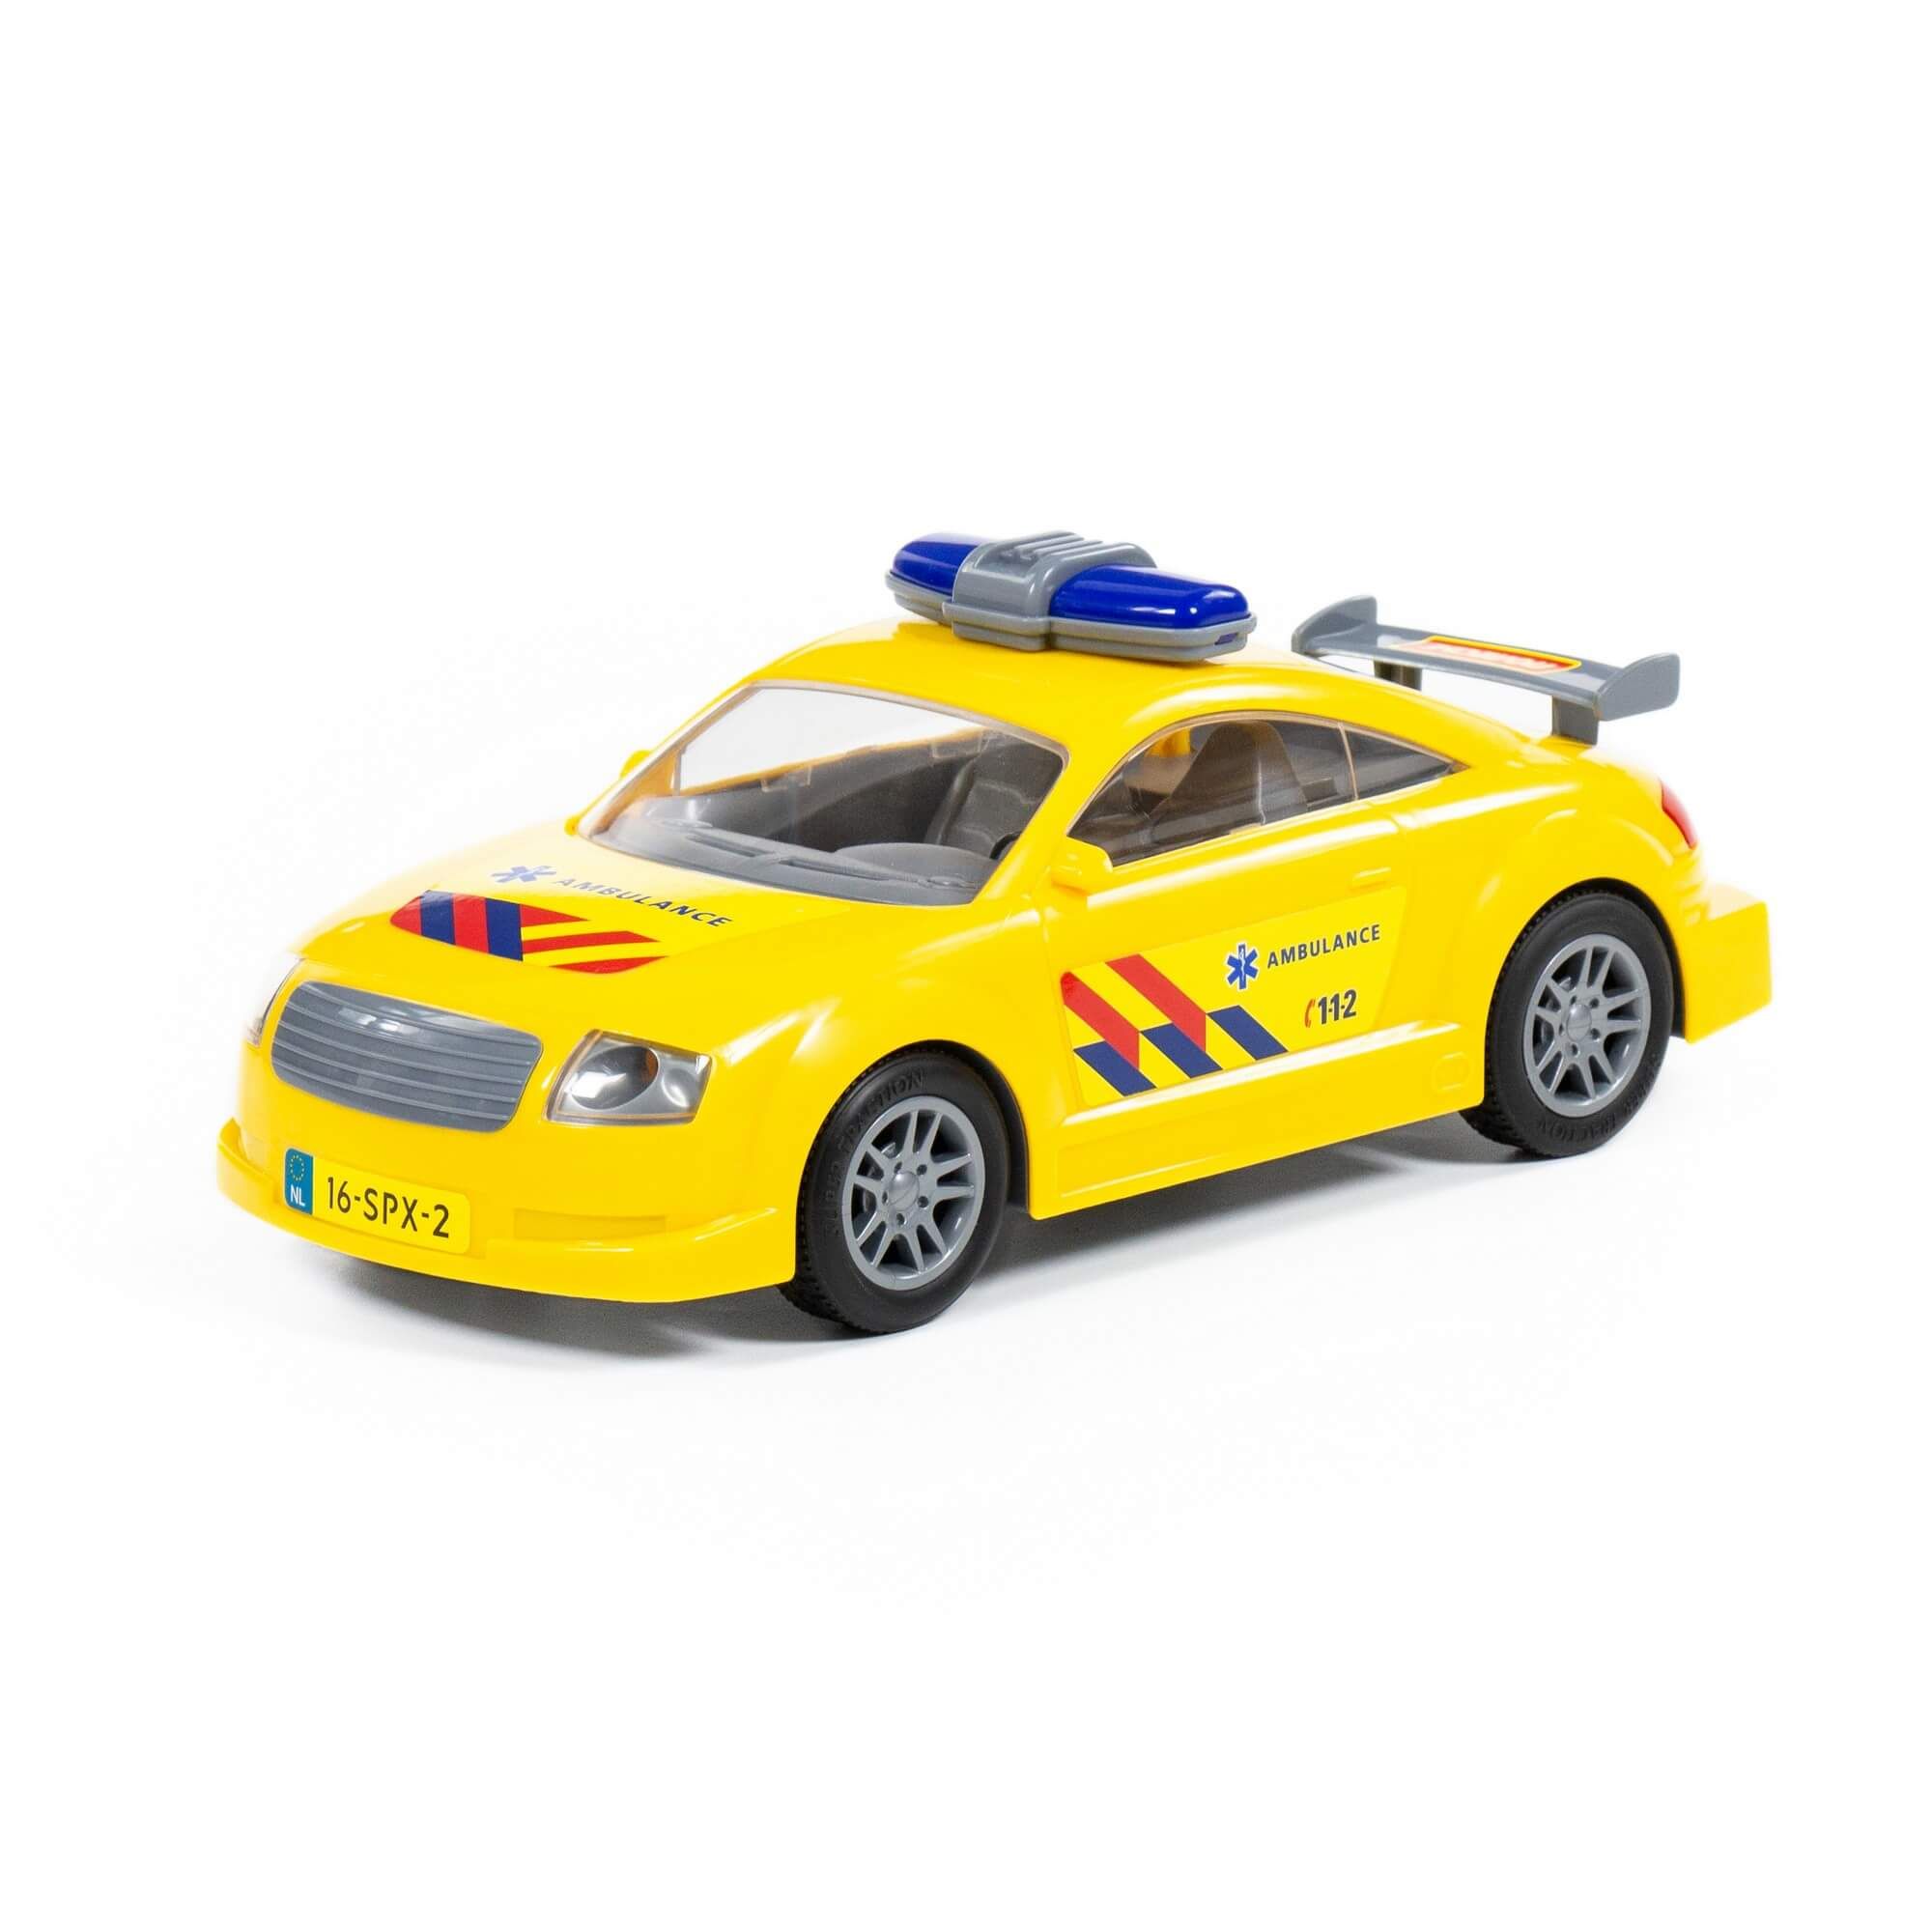 Автомобиль скорая помощь инерционный (NL) (в пакете) 71293 машинка автомобиль скорая помощь у850 12